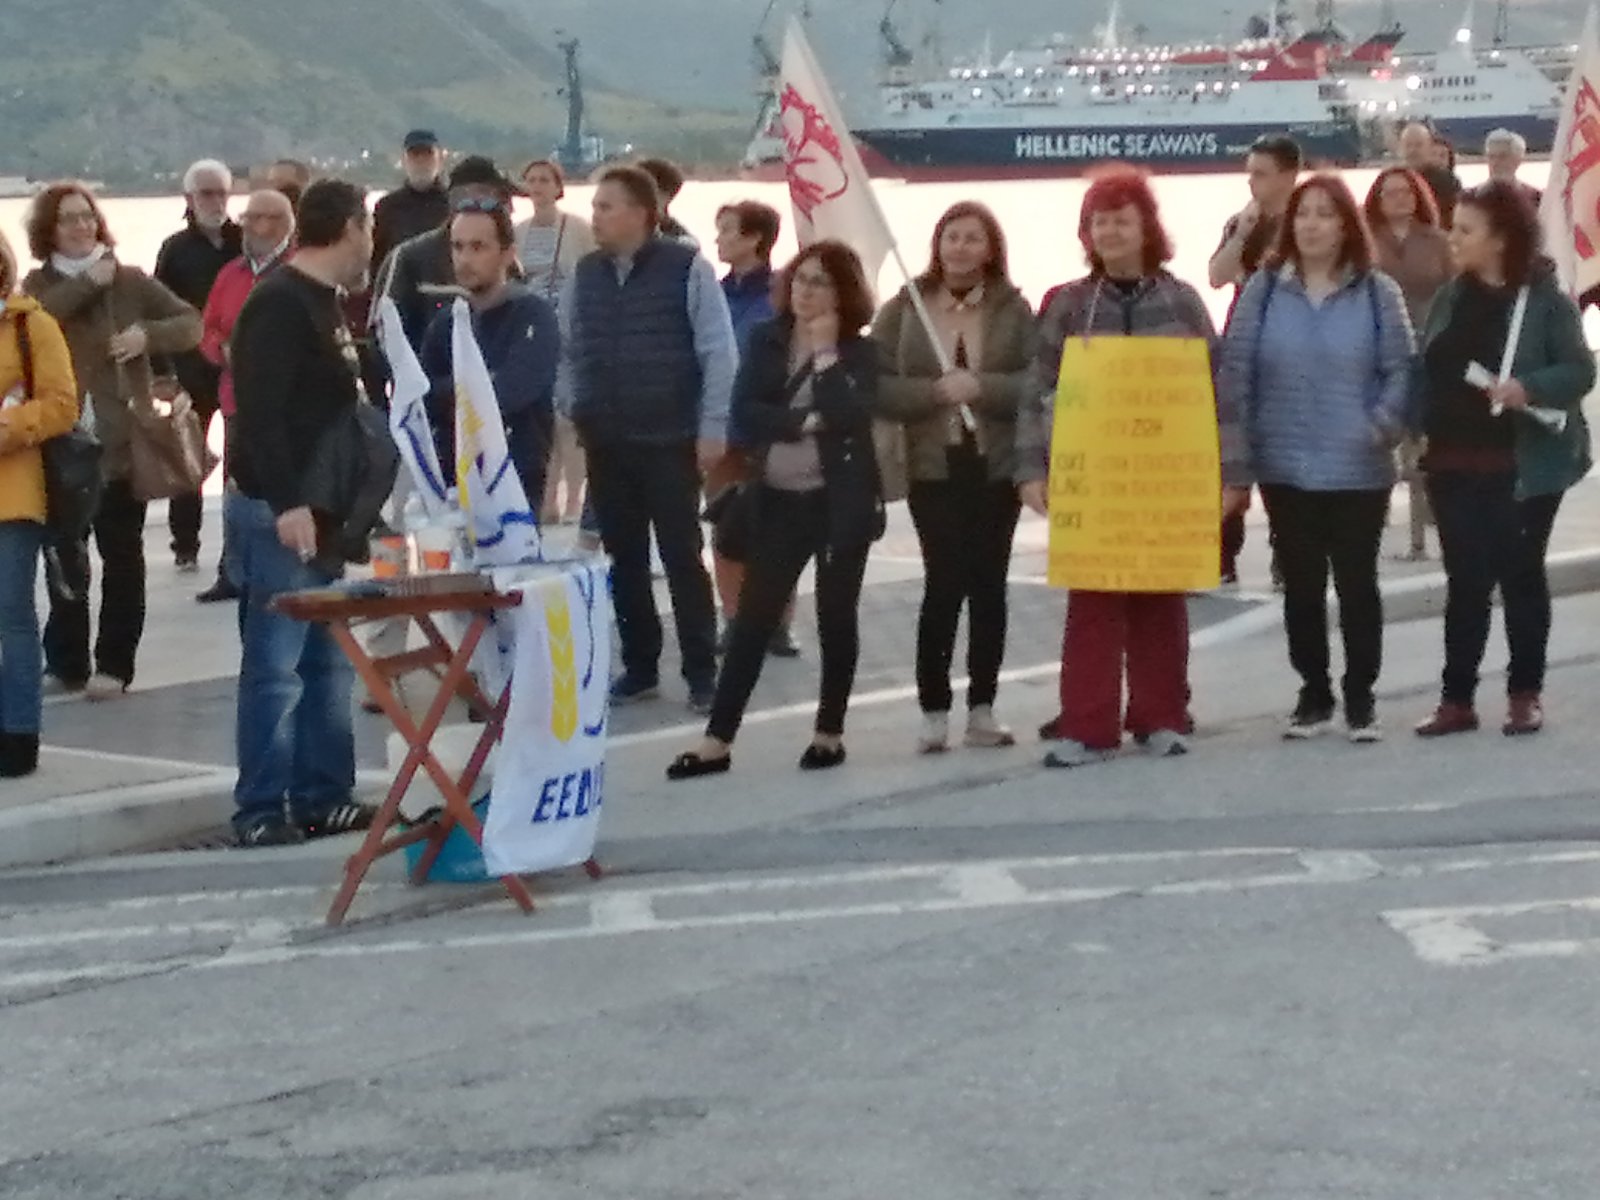 Διαμαρτυρία σωματείων και φορέων της Μαγνησίας ενάντια στη δημιουργία μονάδας LNG